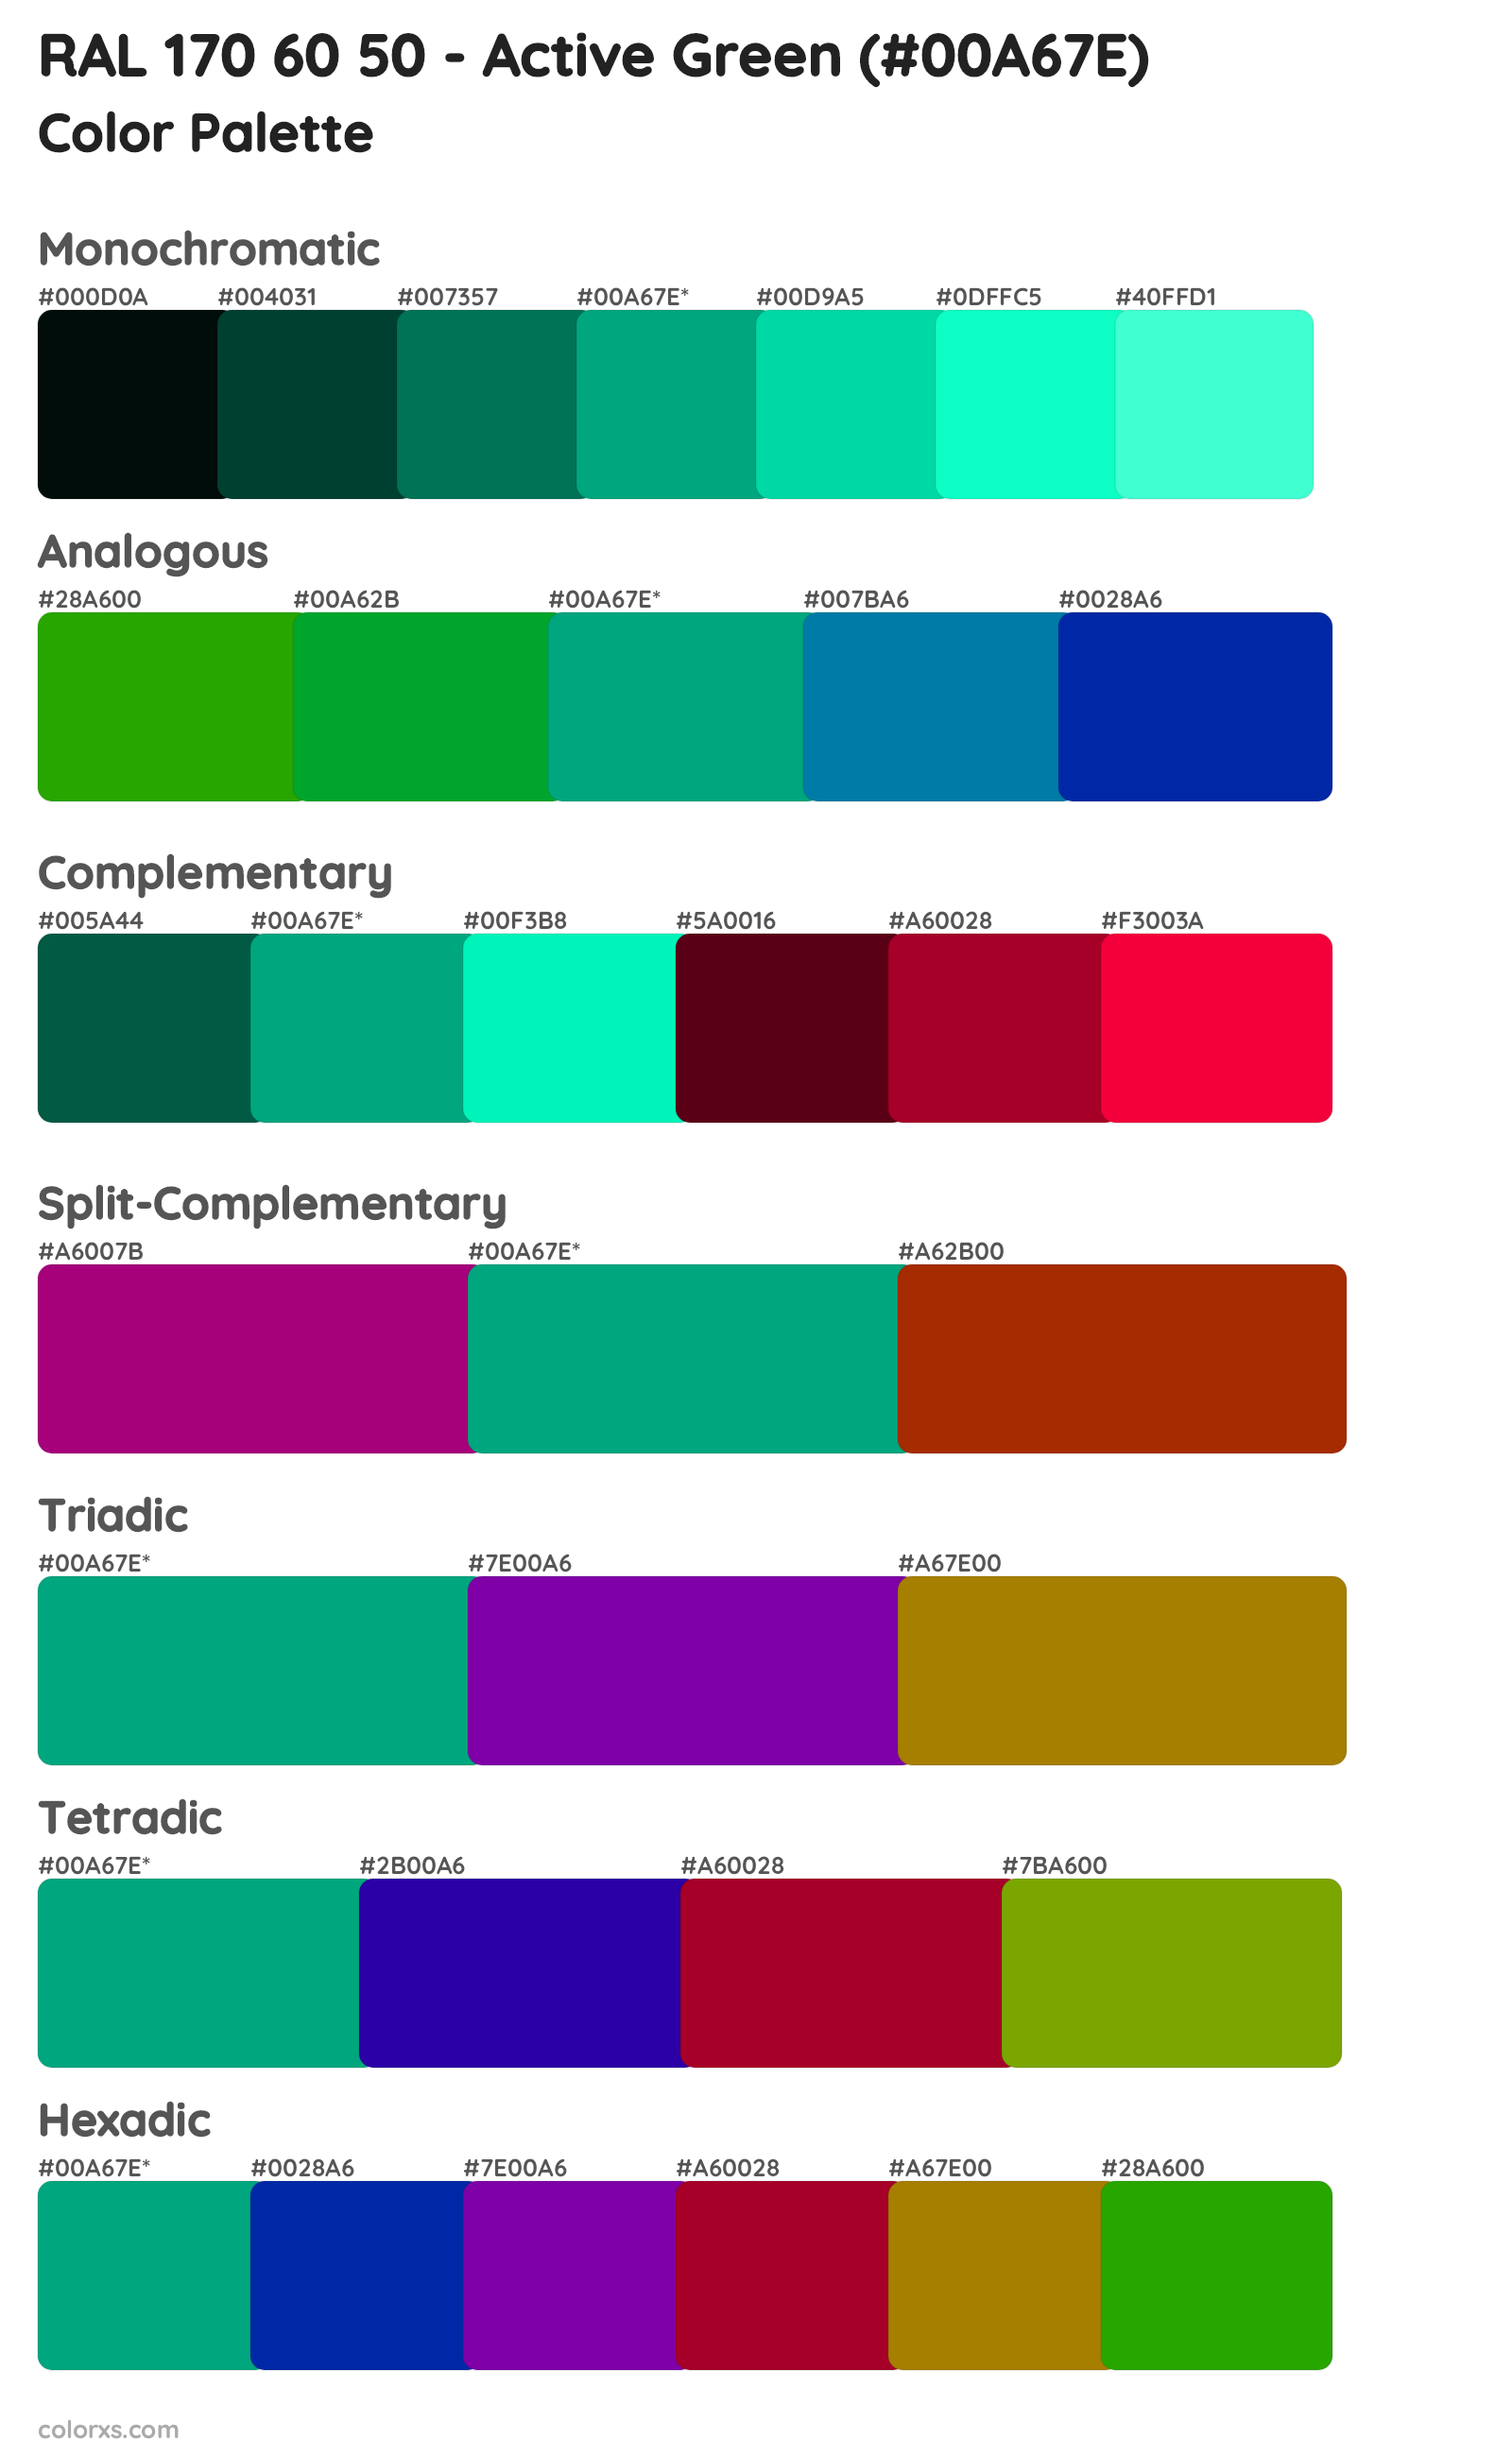 RAL 170 60 50 - Active Green Color Scheme Palettes